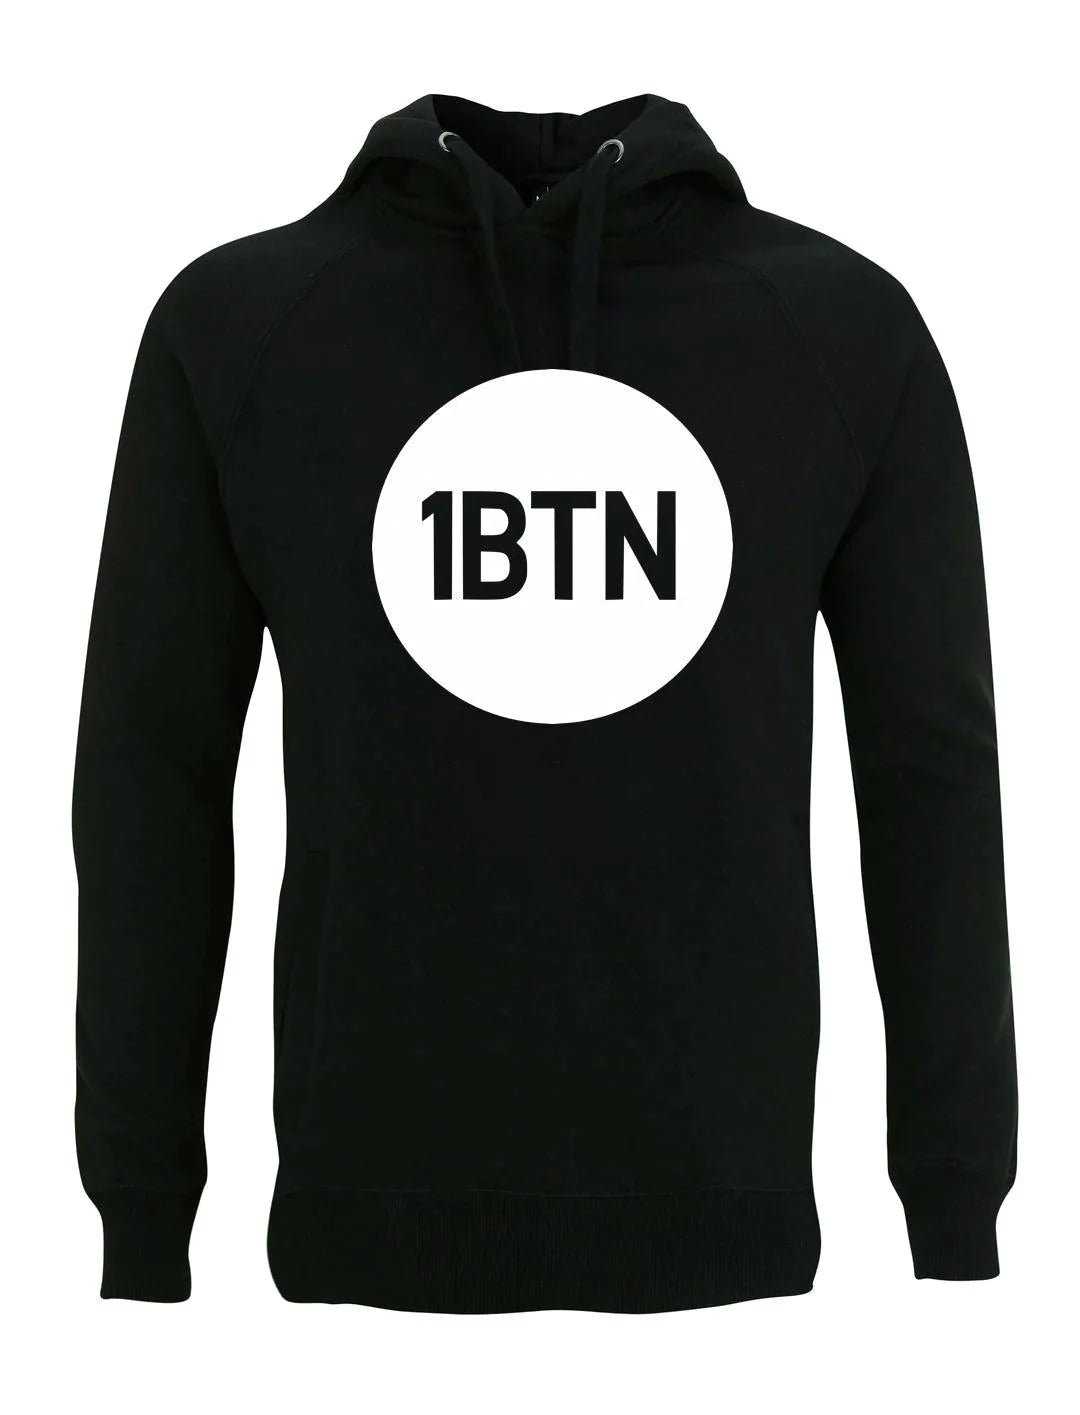 1BTN LARGE LOGO: Hoodie Official Merchandise of 1BTN.FM (5 Colour Options) - SOUND IS COLOUR